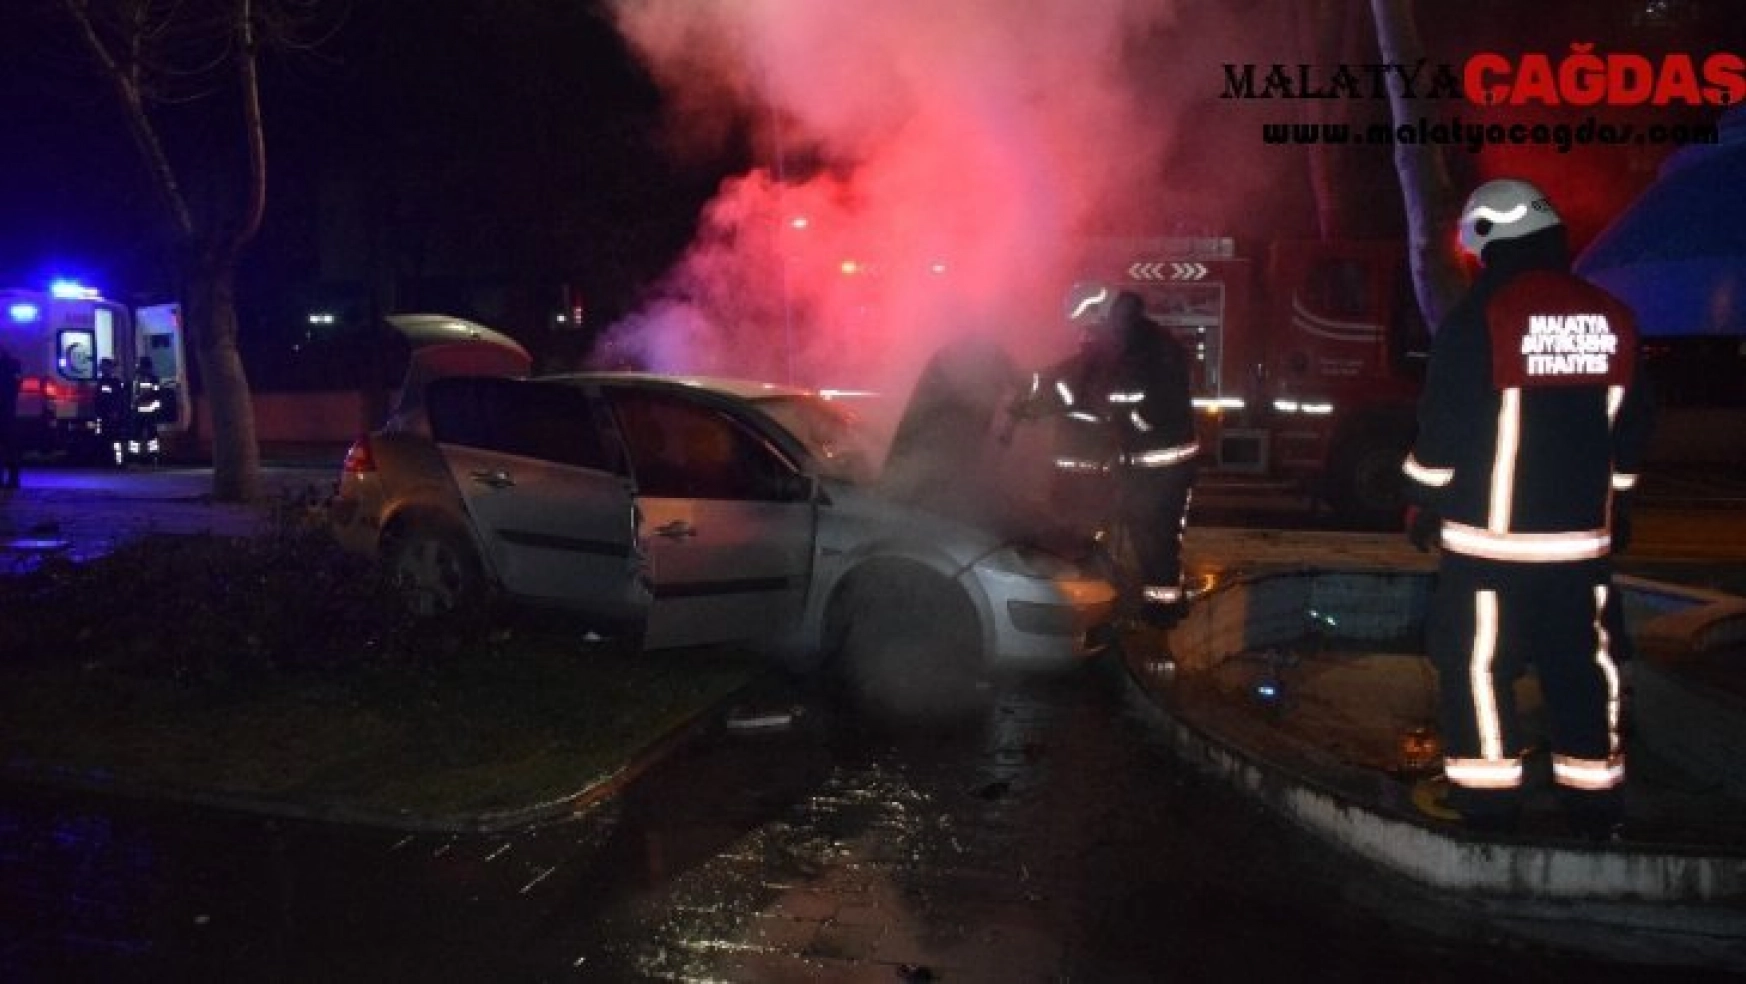 Malatya'da kaza yapan otomobil yandı: 4 yaralı